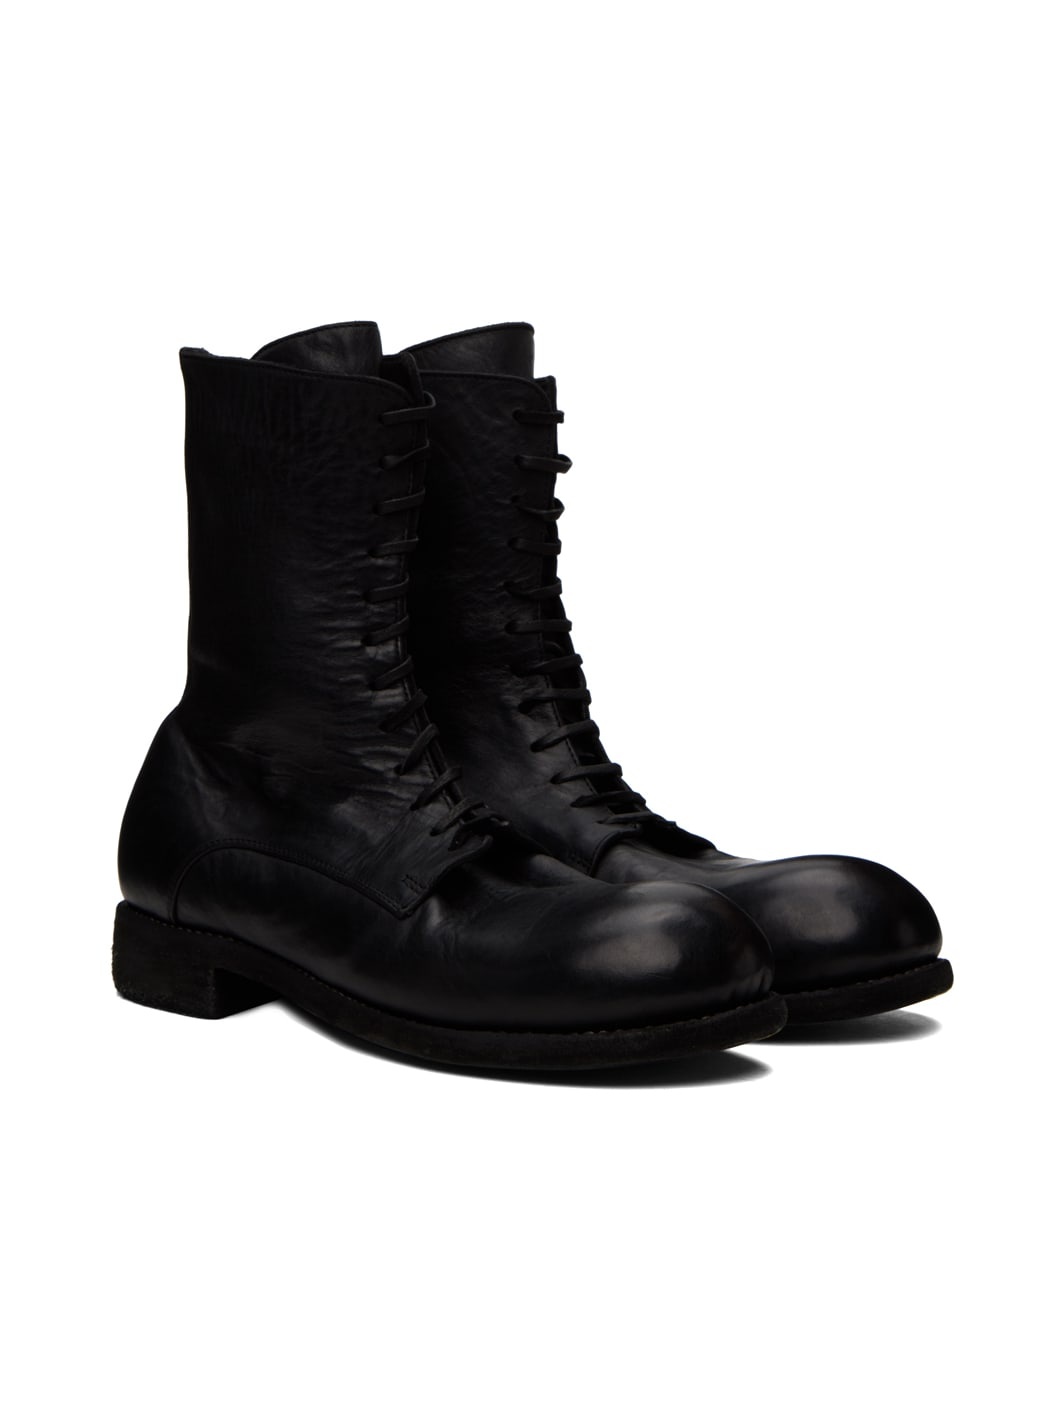 Black GR05 Boots - 4